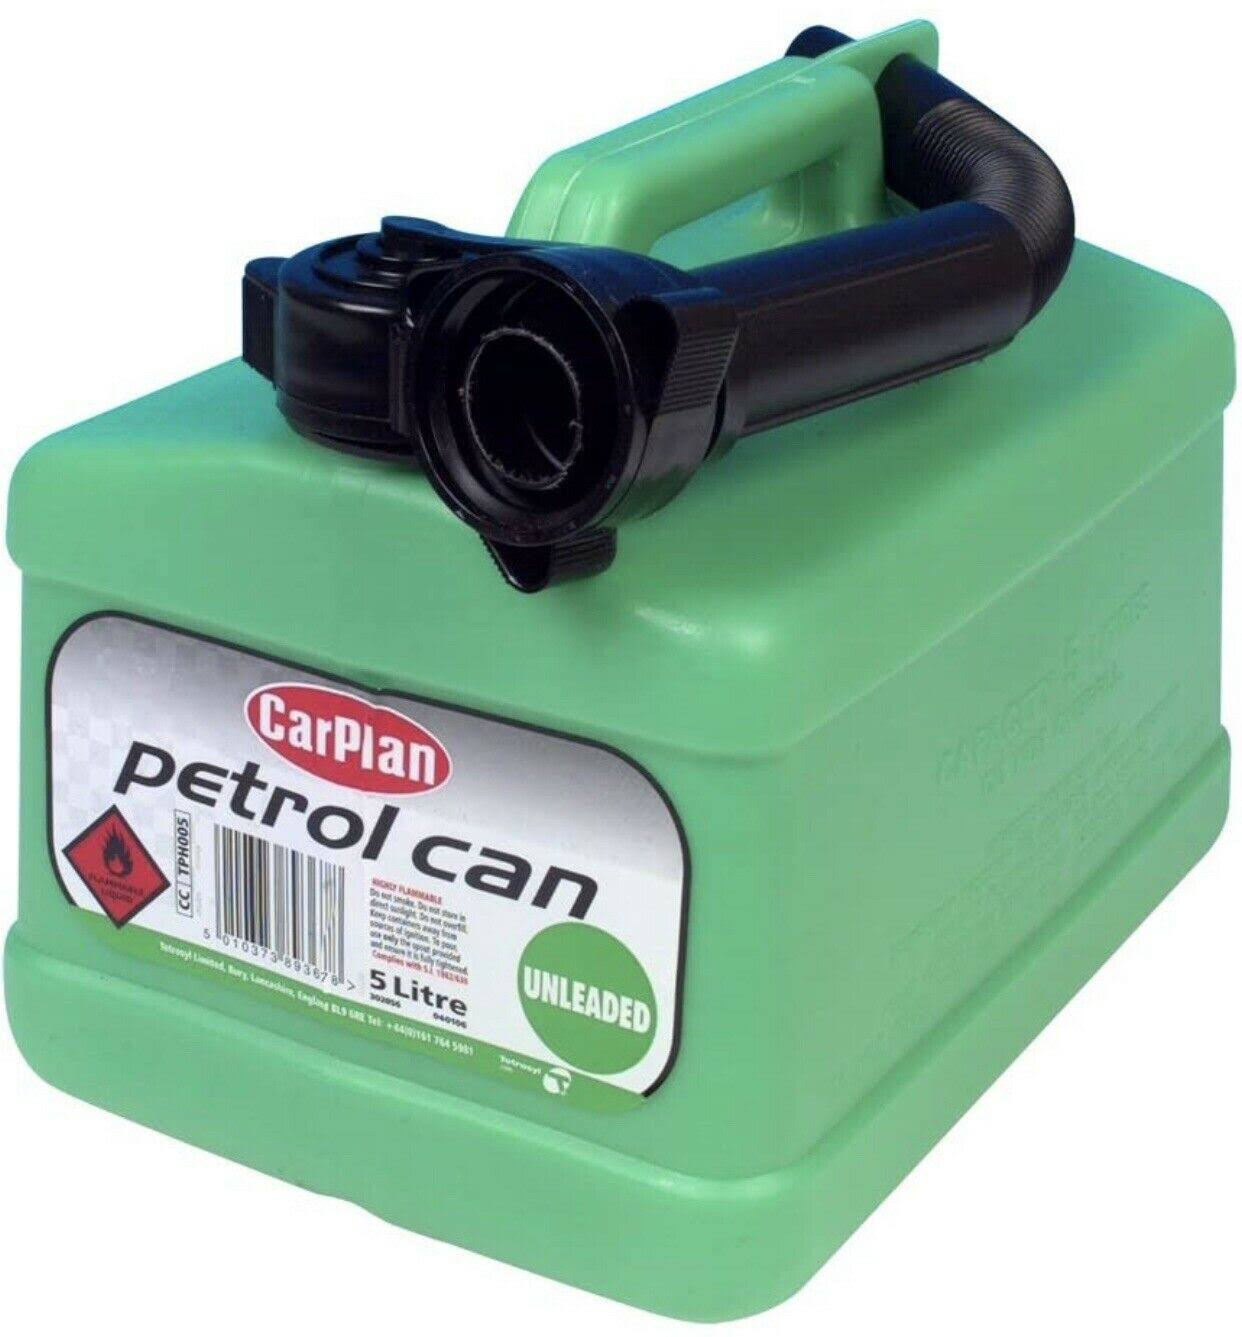 CarPlan Petrol Can - 5L